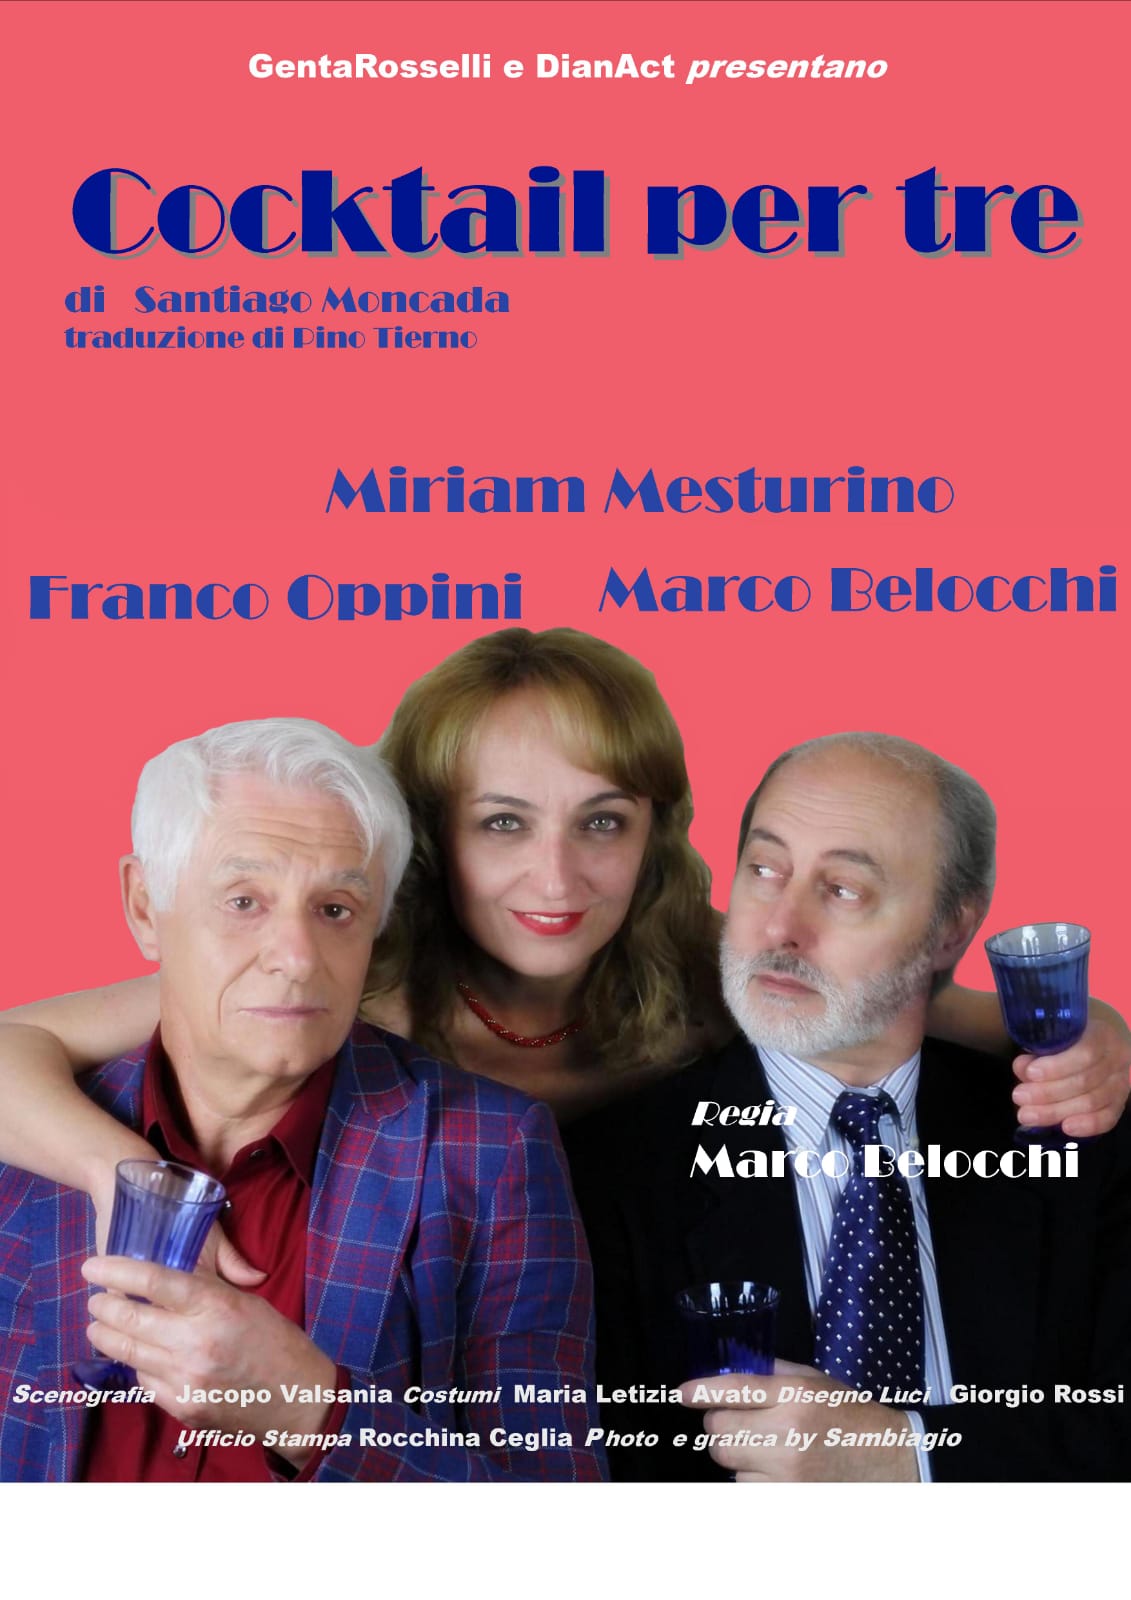 Miriam Mesturino Manifesto Cocktail per tre